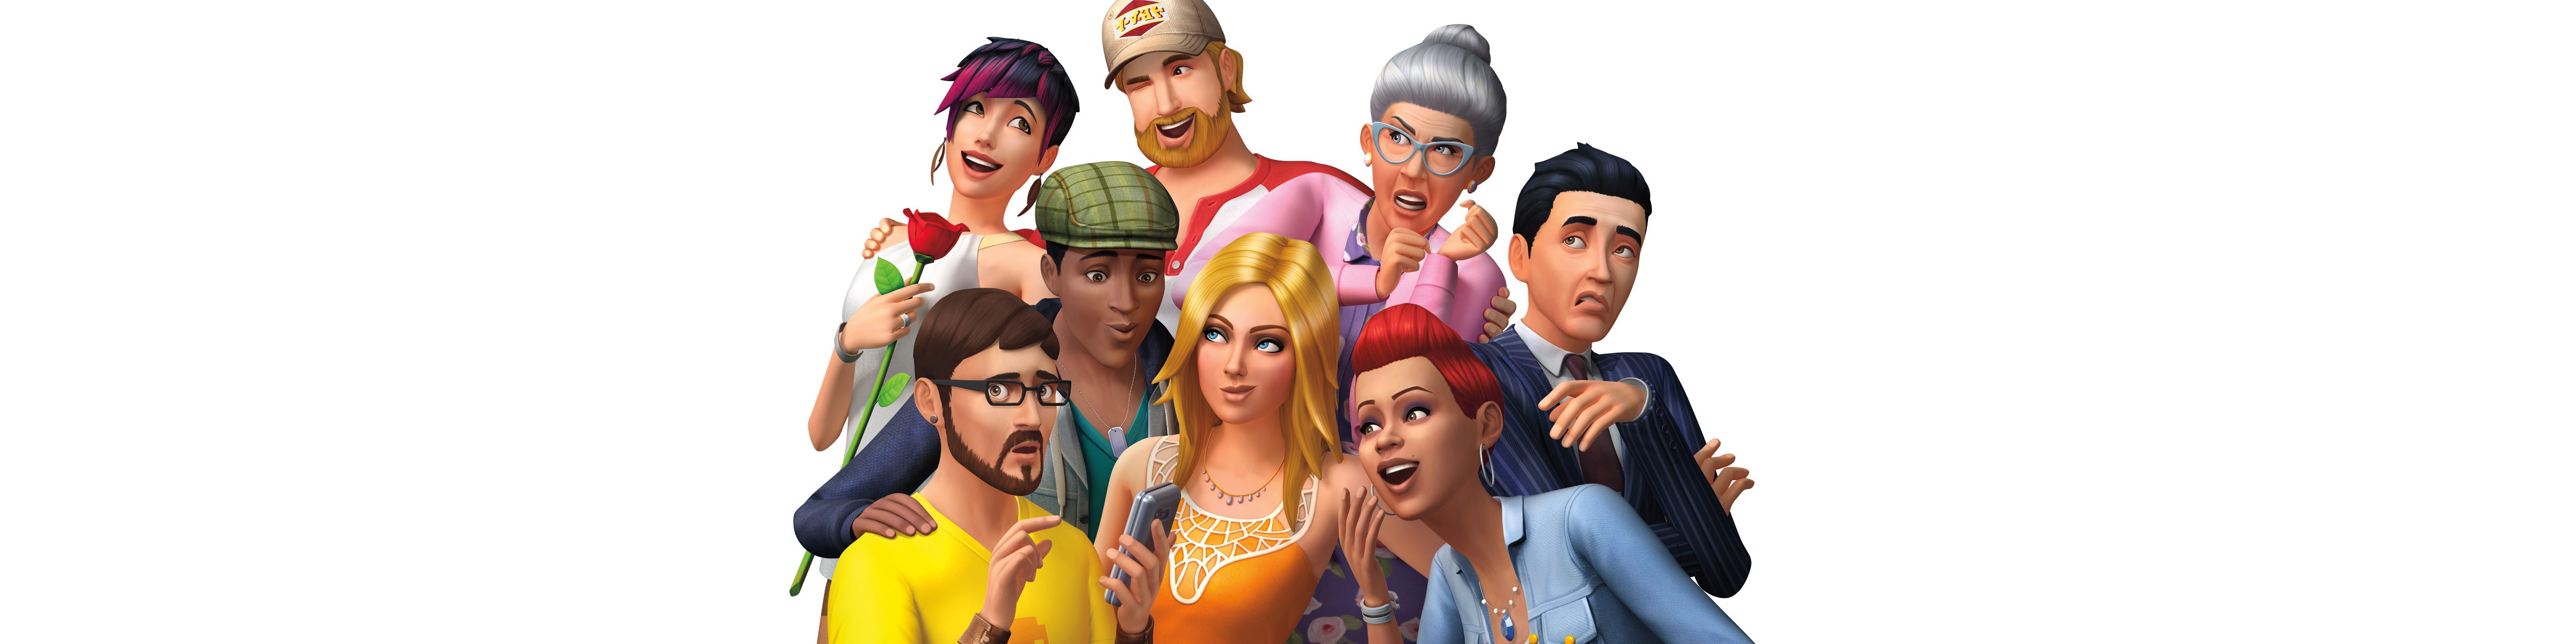 Origin Sims 4 Download Mac